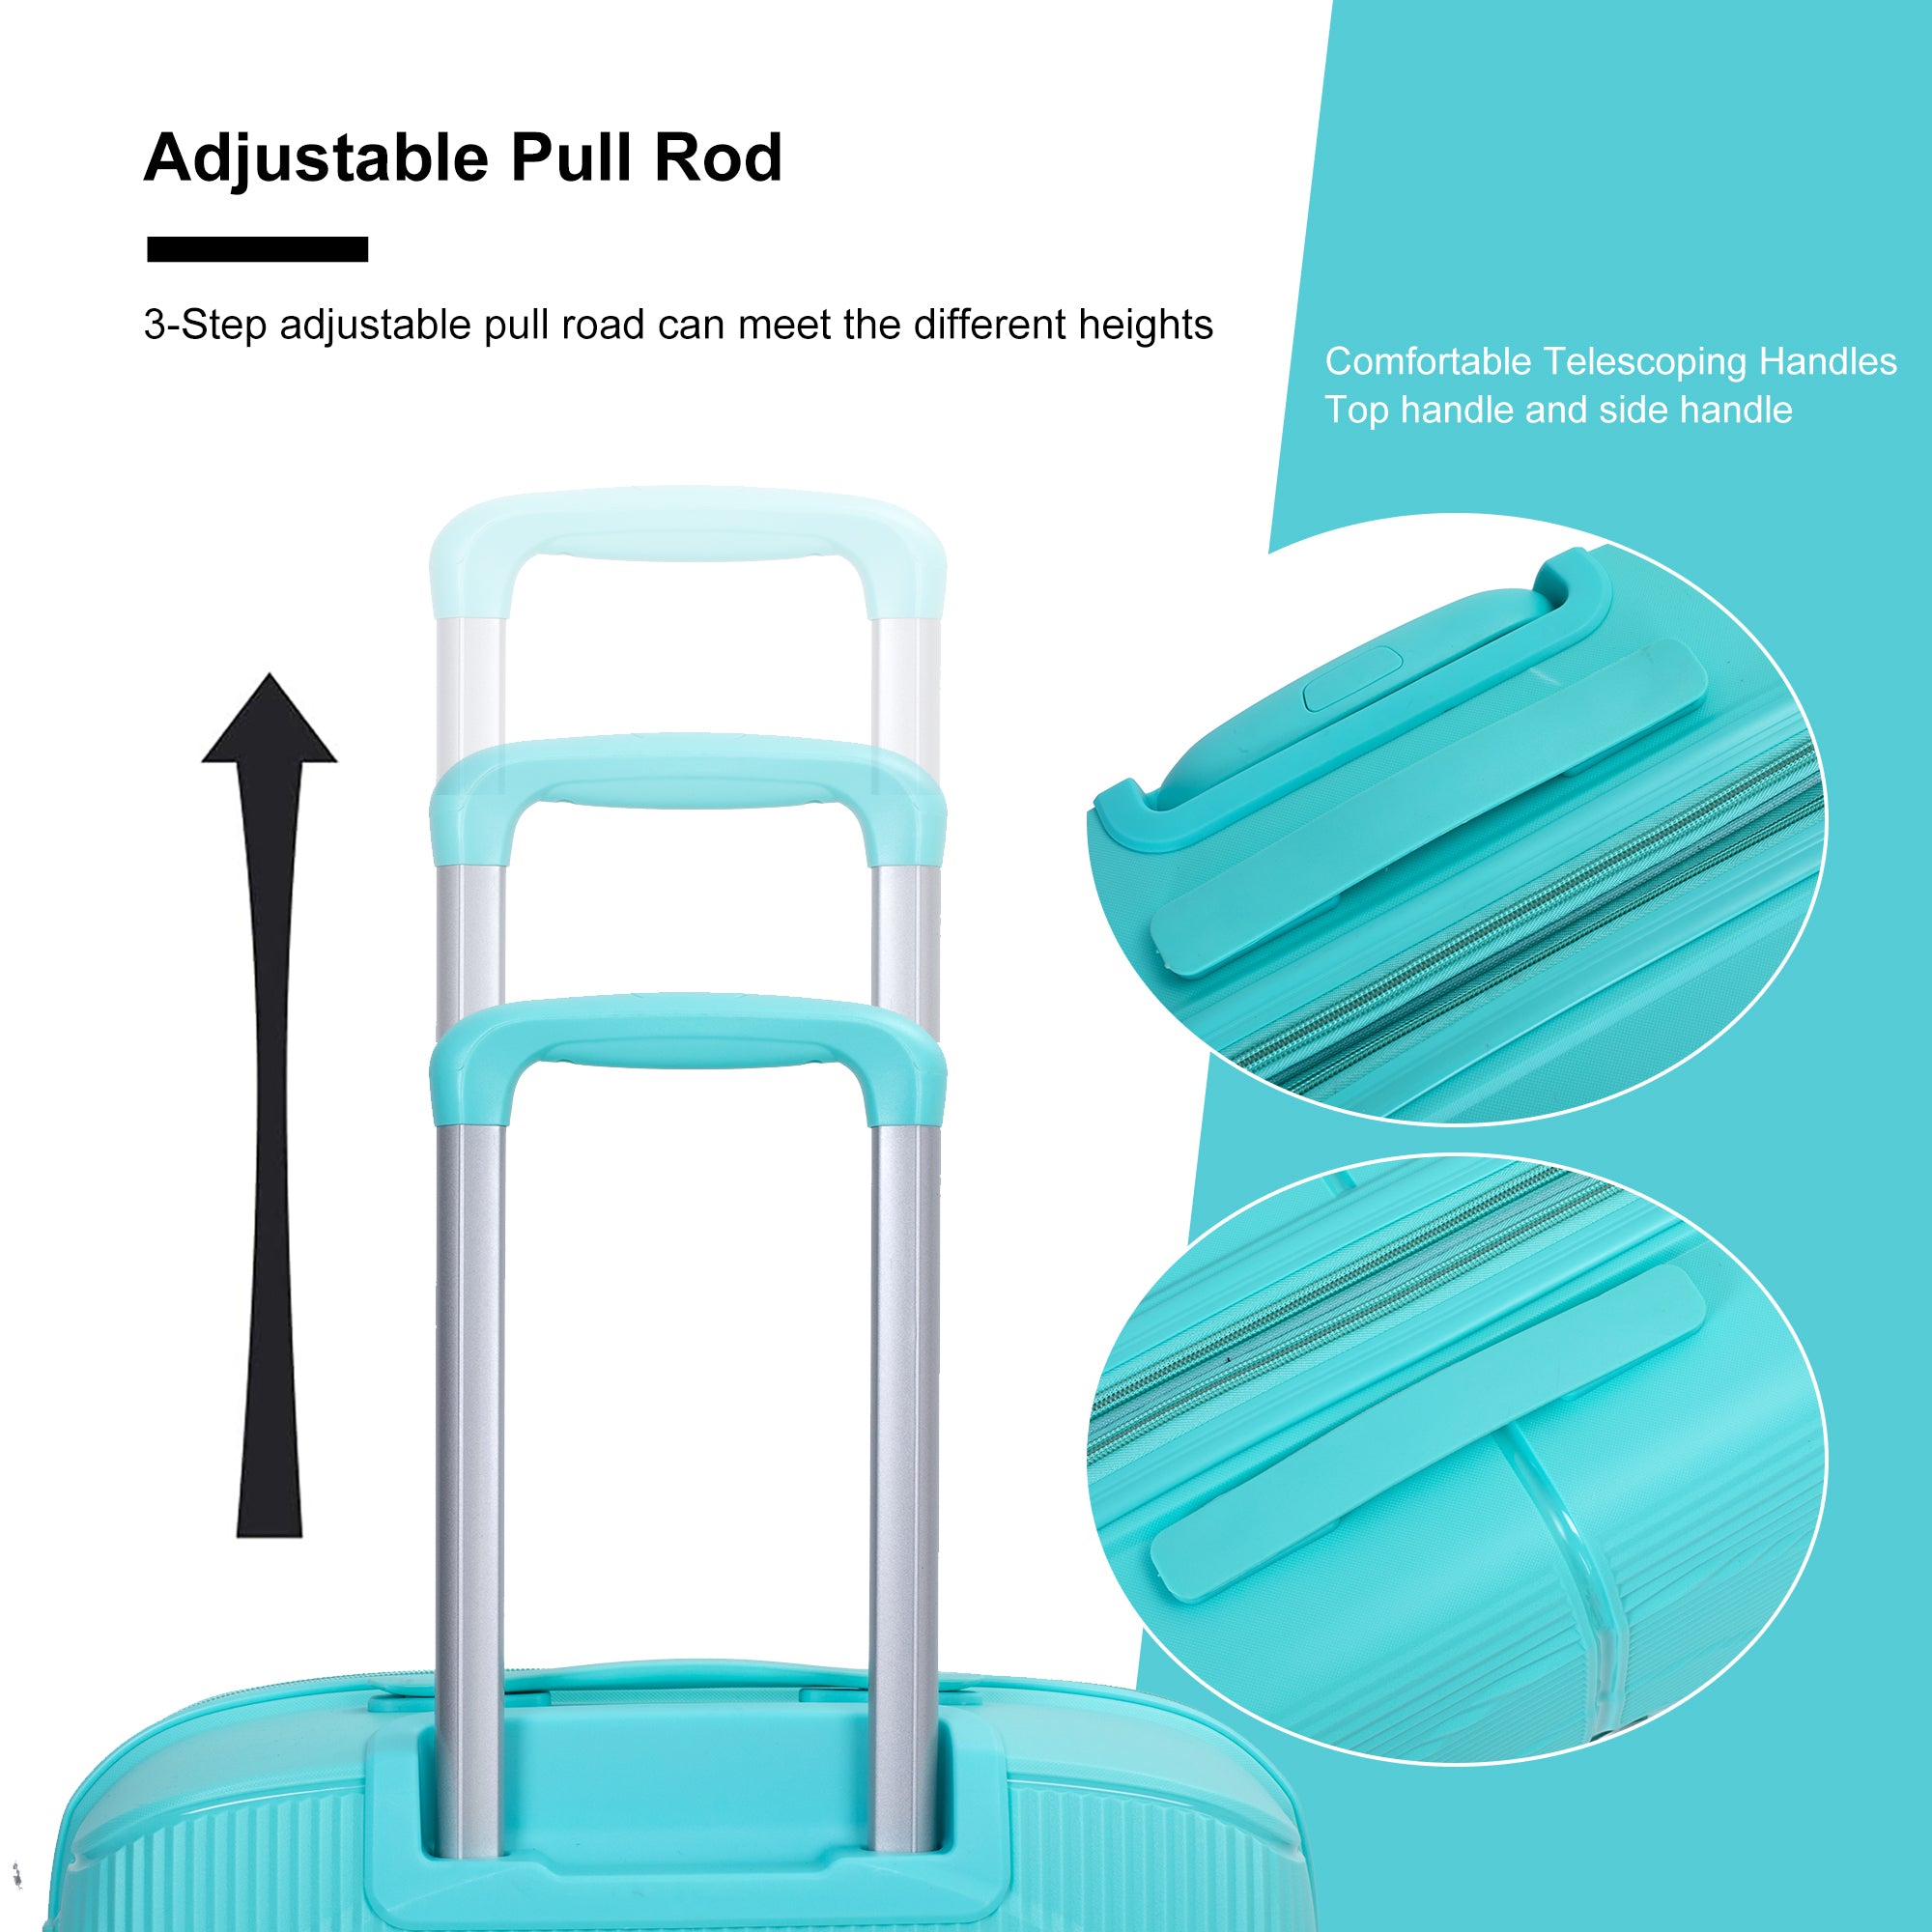 Expandable Hardshell Suitcase Double Spinner Wheels PP lake blue-polypropylene